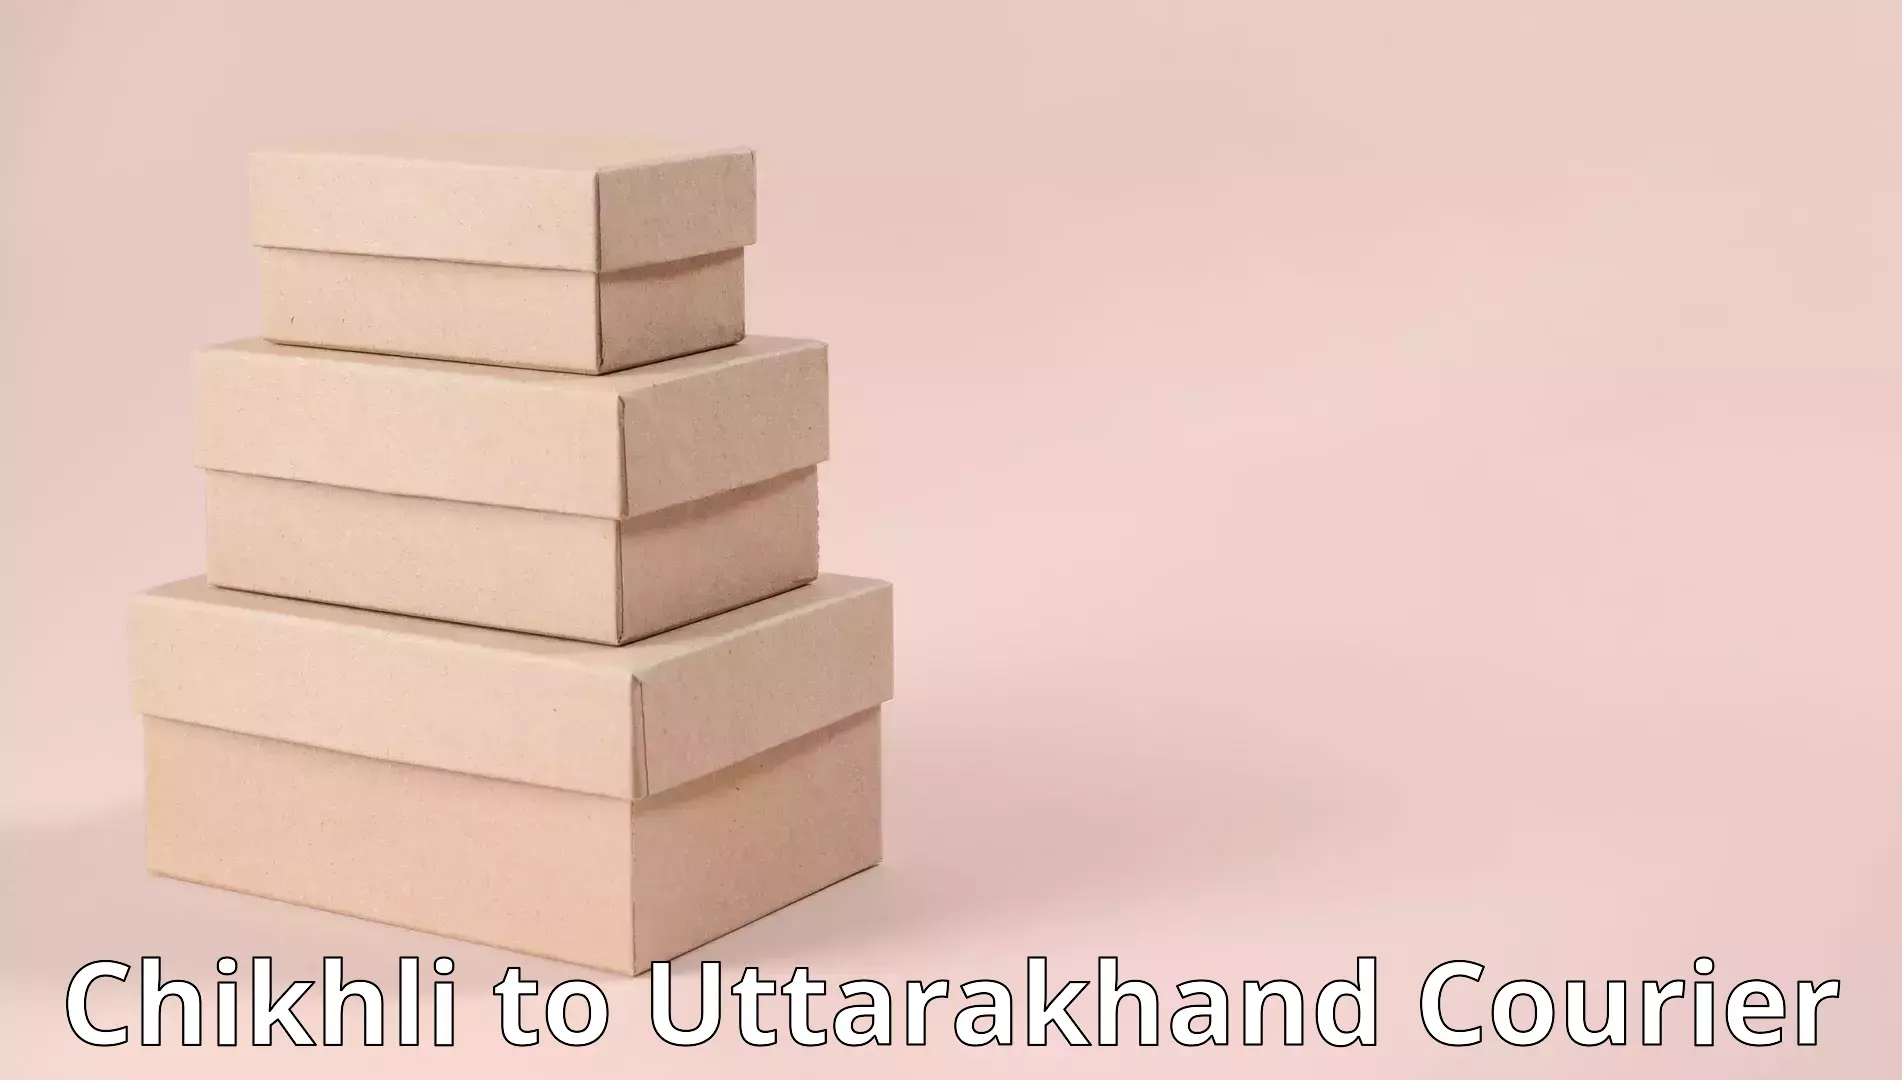 Full-service movers Chikhli to Uttarakhand